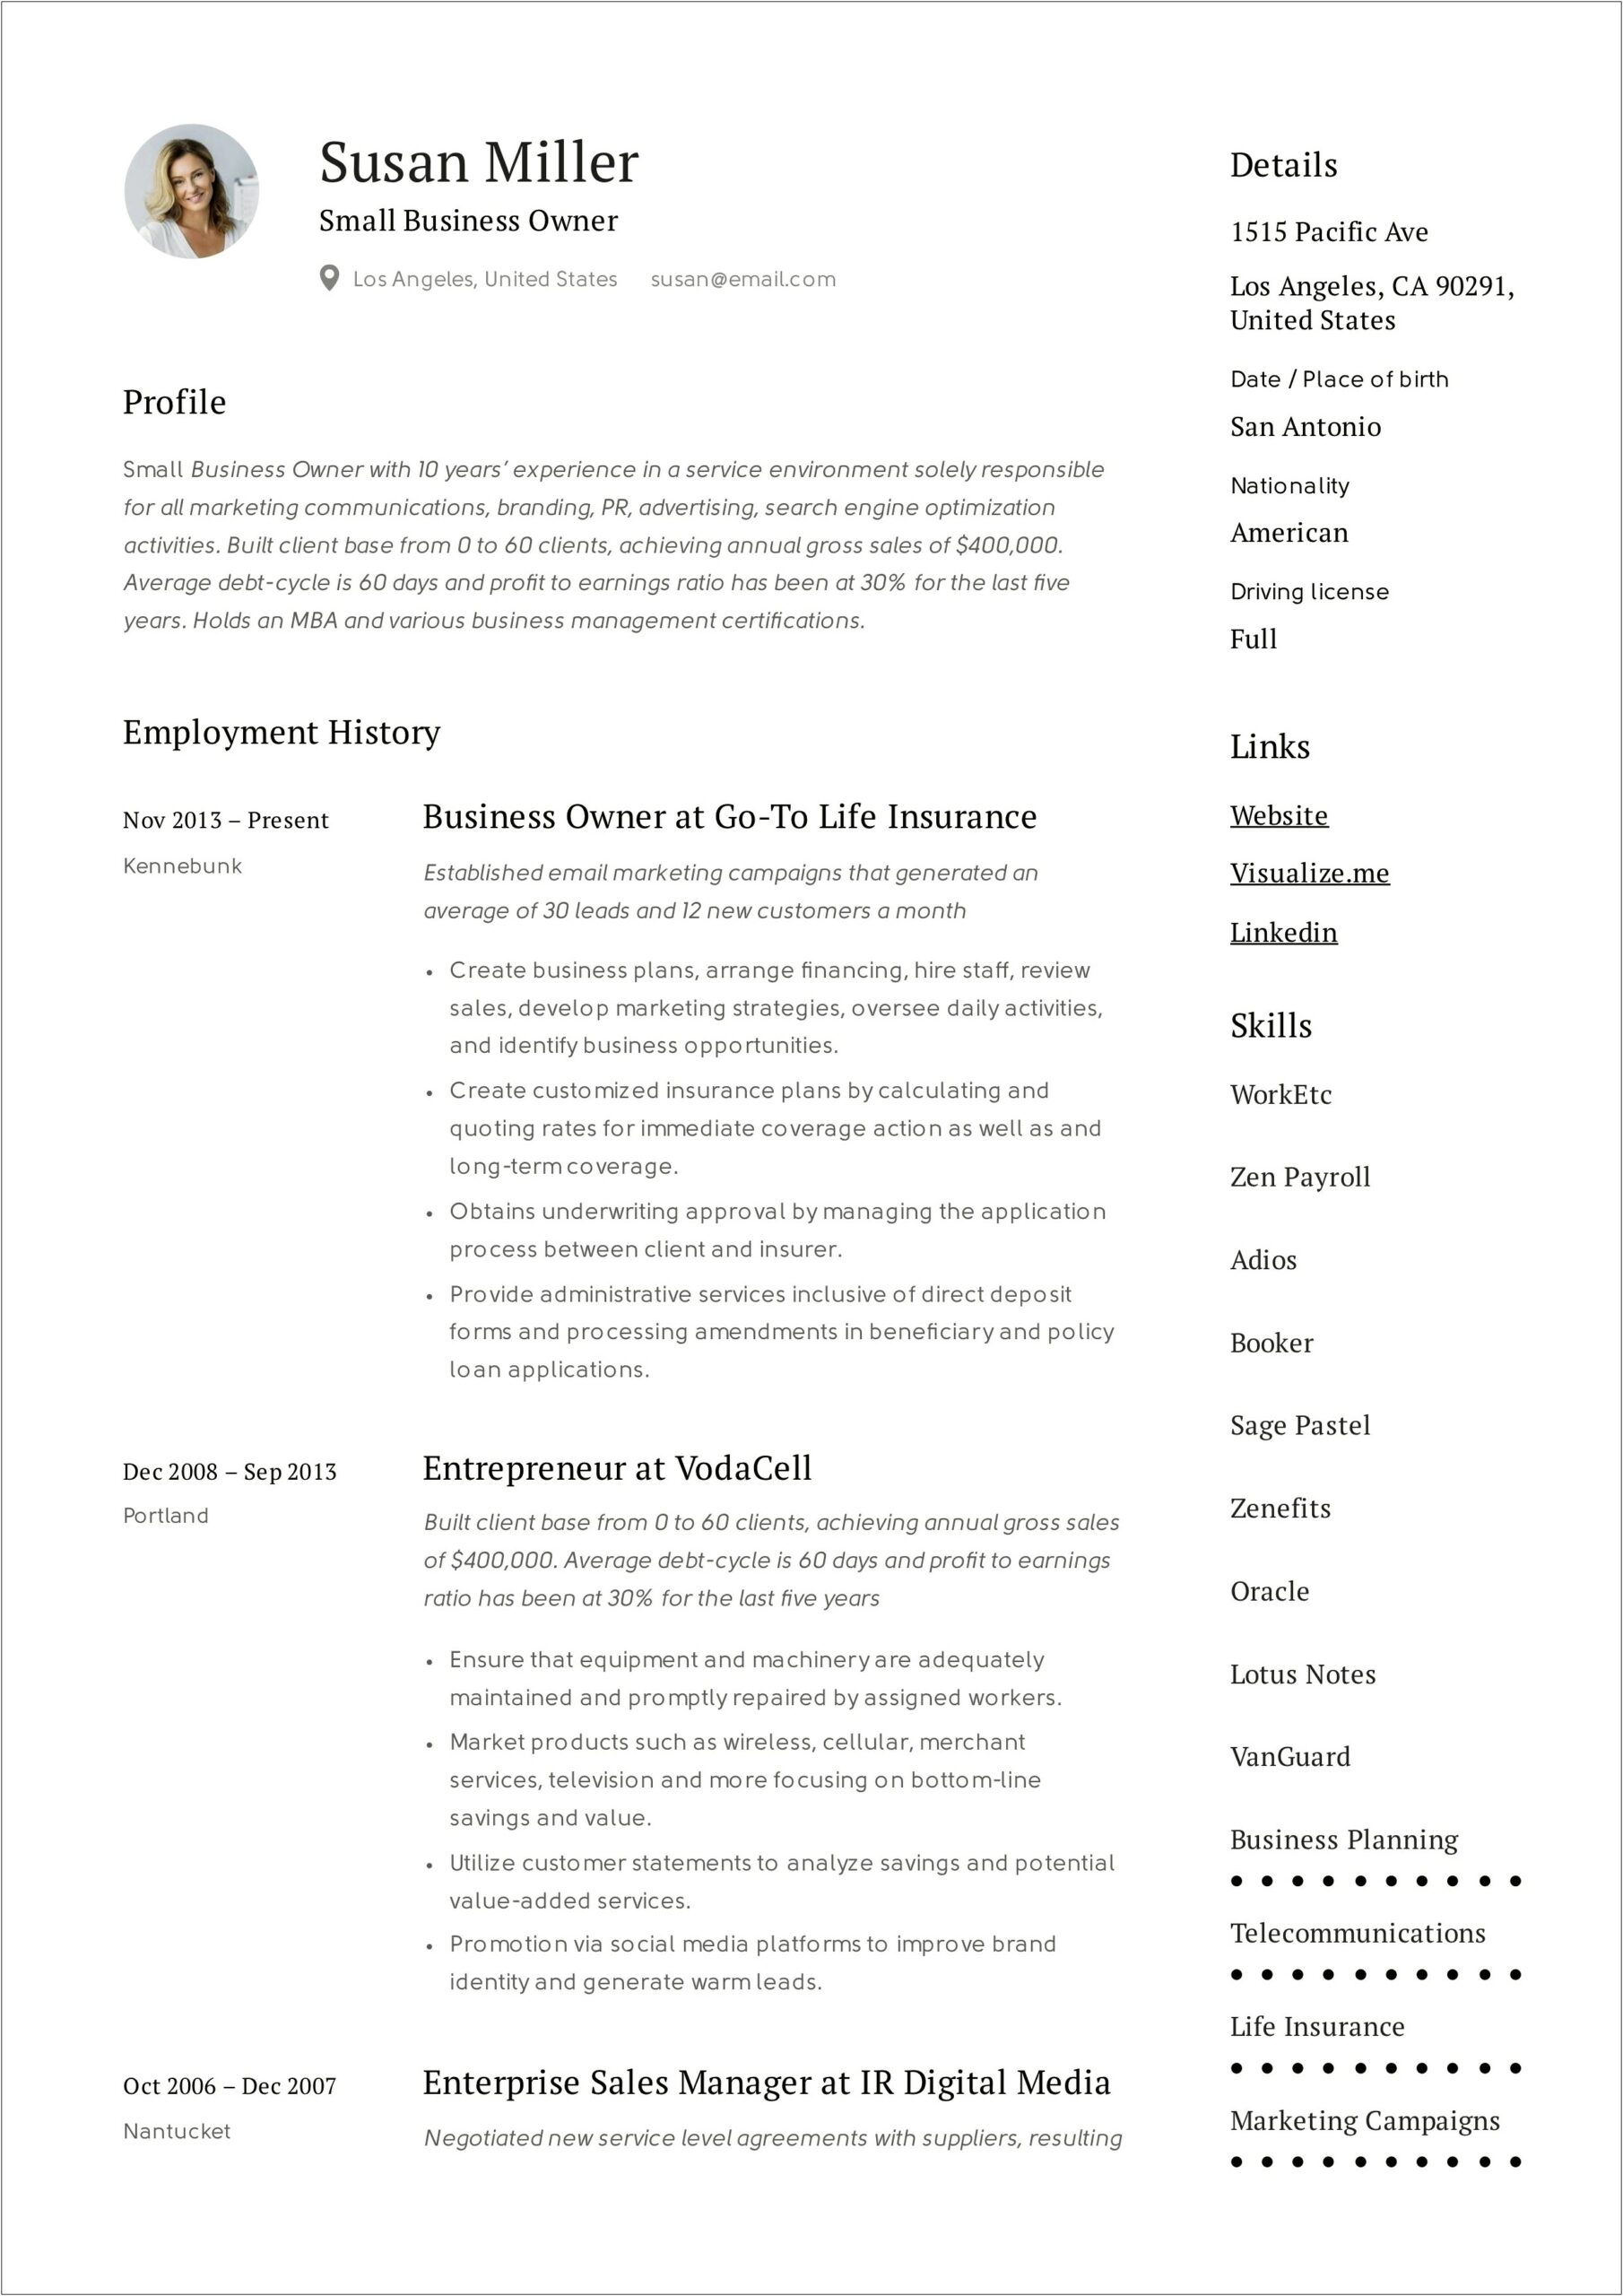 Job Description For Mlm Business Owner Resume